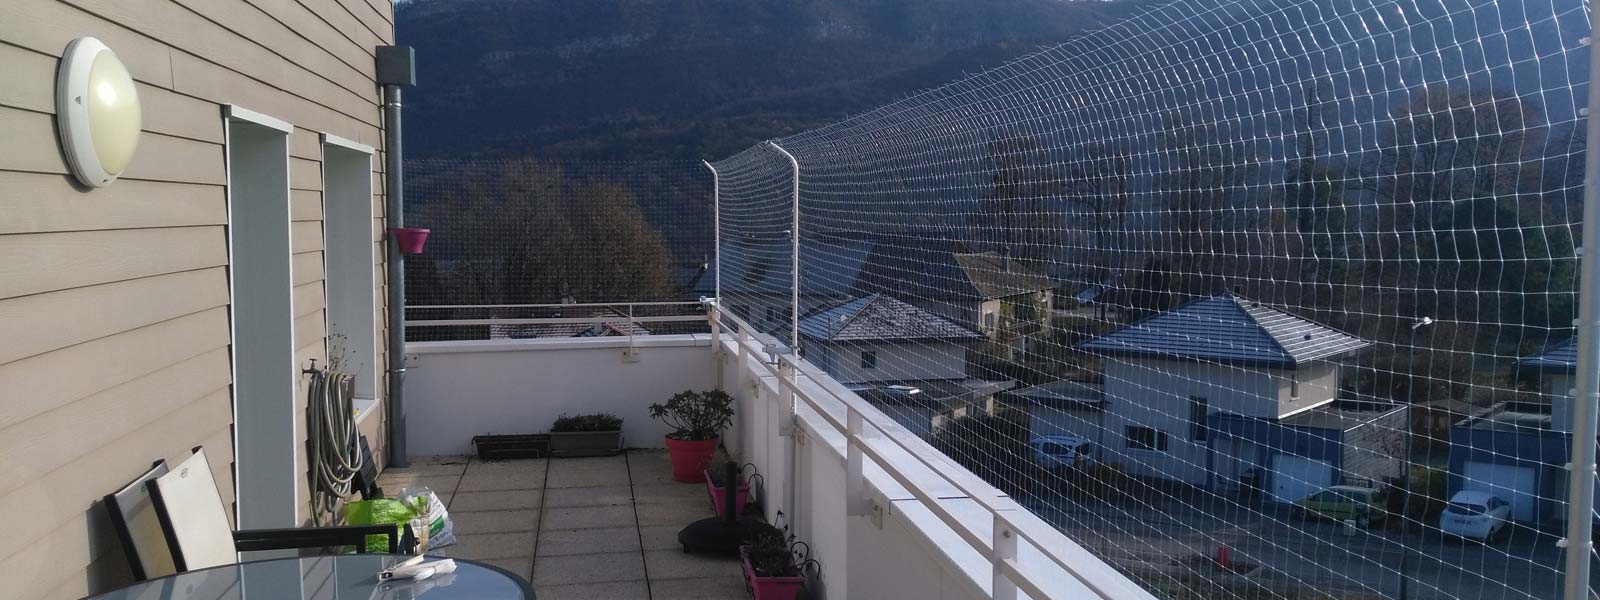 Installation de filets de protection pour chats sur balcons, terrasses et fenêtres - Brico Réno Annecy